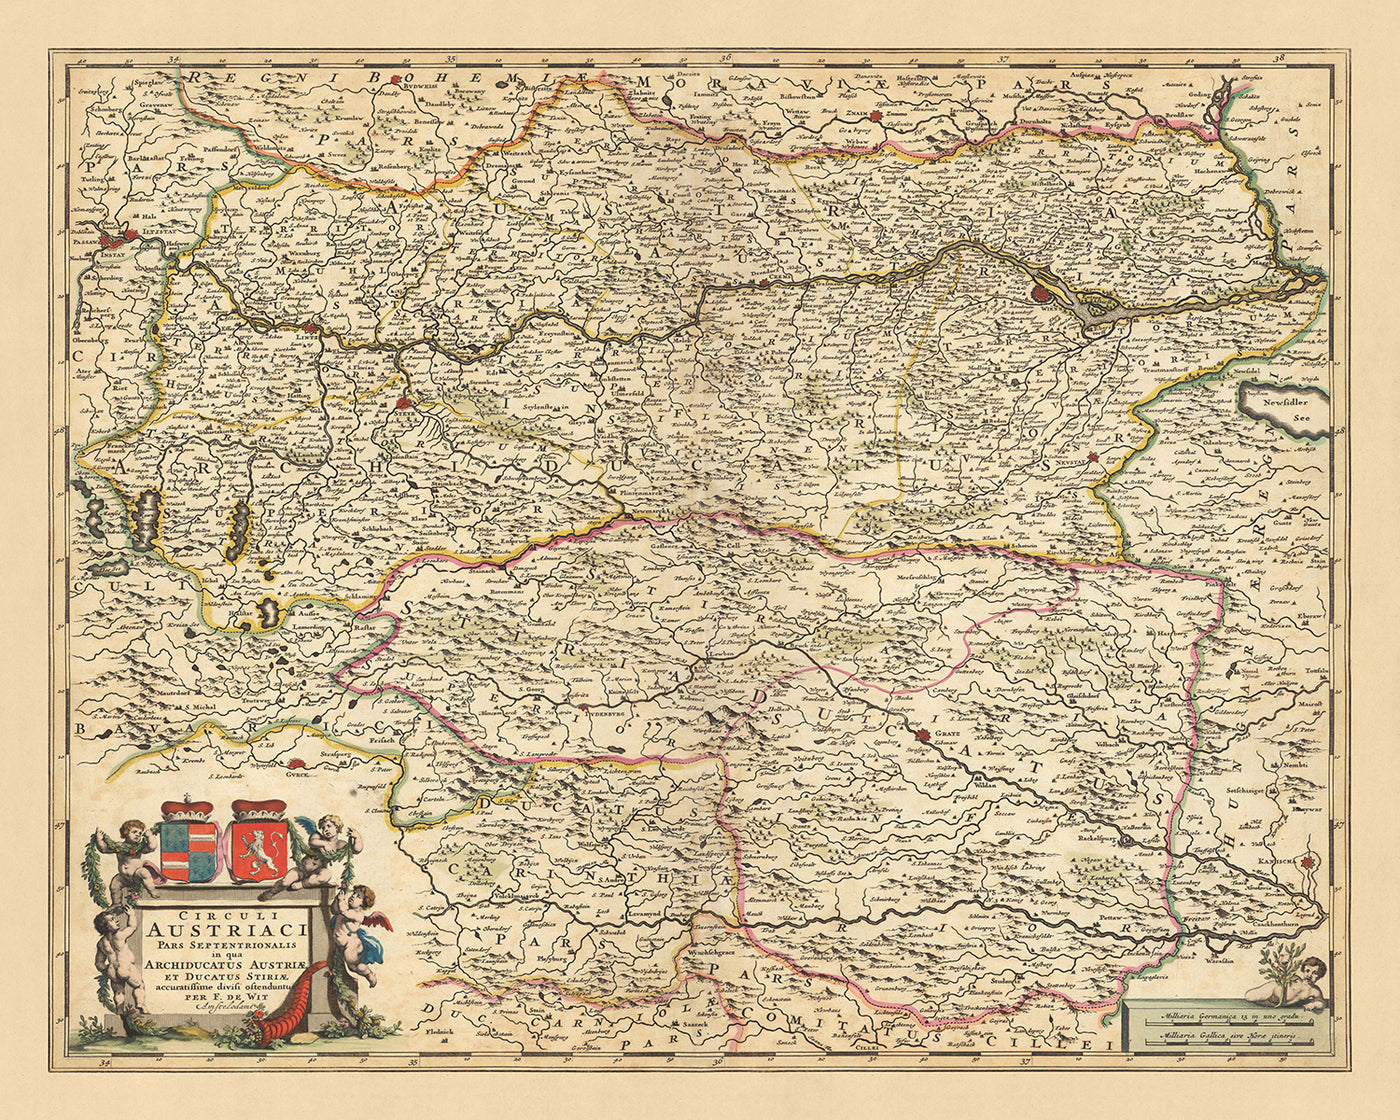 Ancienne carte du cercle autrichien du nord par Visscher, 1690 : Vienne, Graz, Linz, Maribor, parc national de Gesäuse